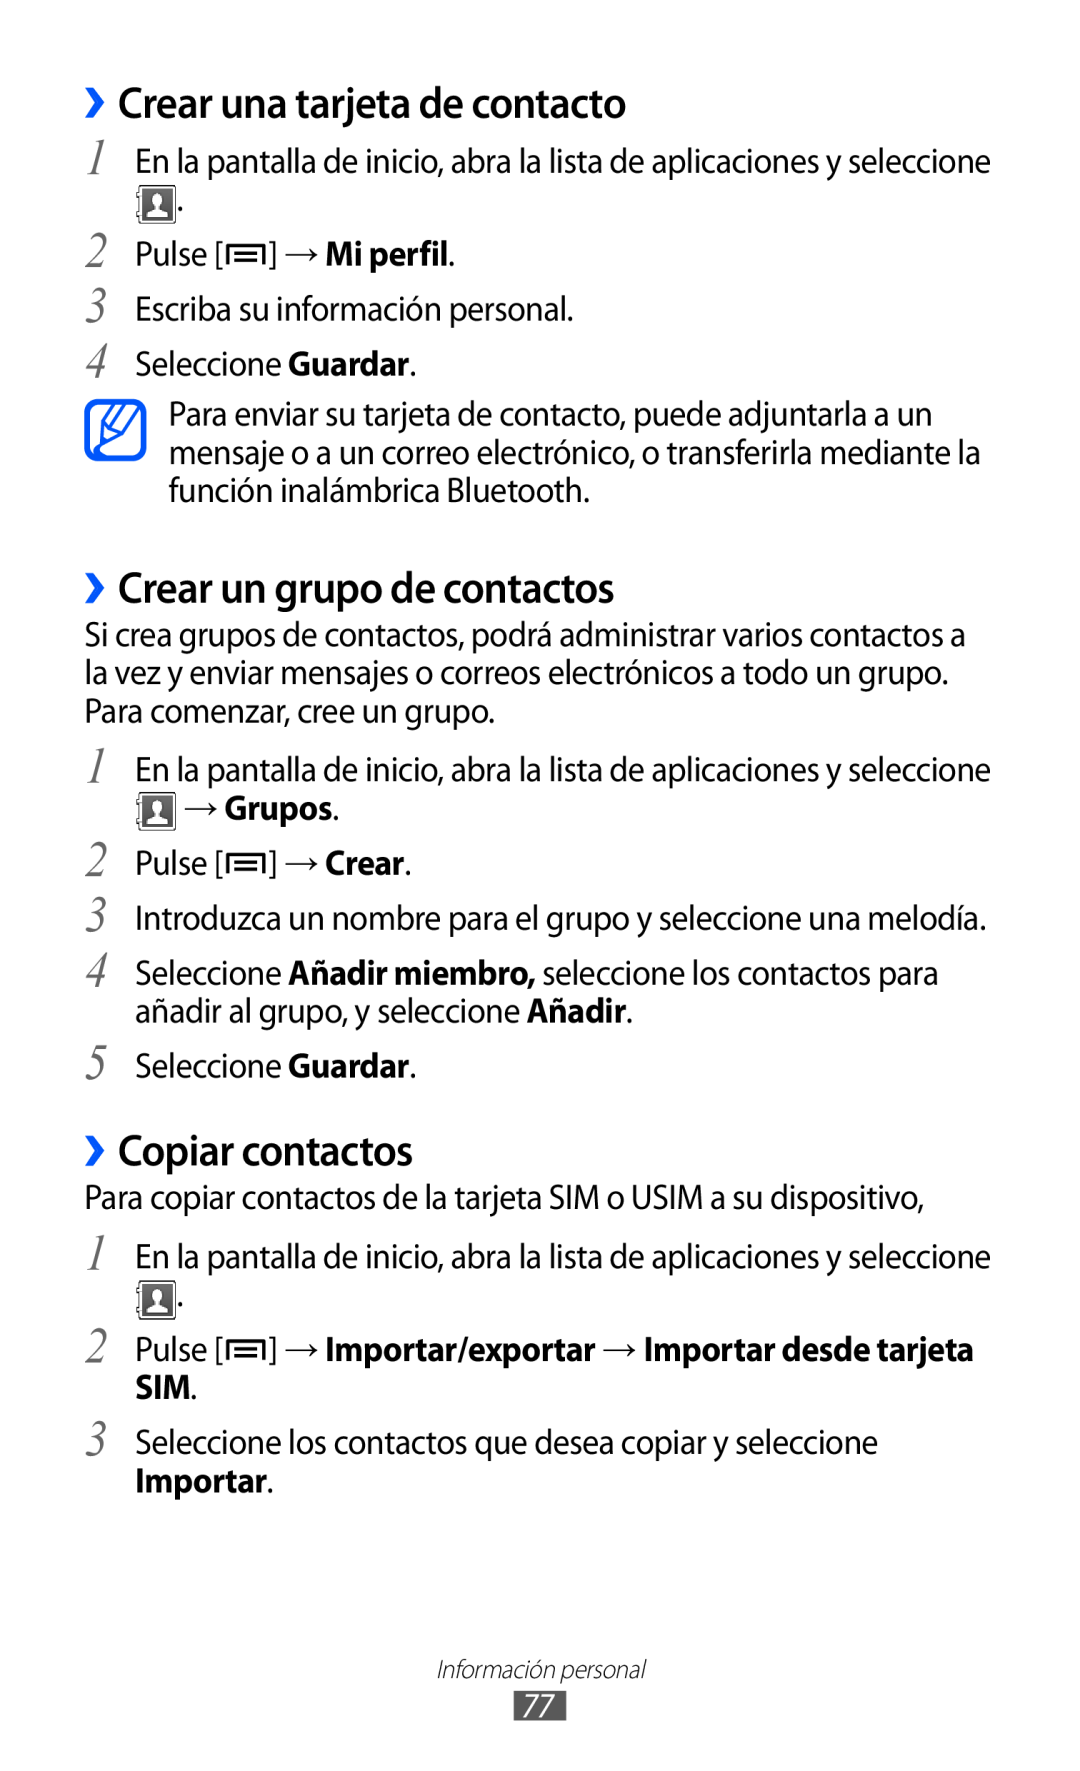 Samsung GT-S6500ZYDMOP manual ››Crear una tarjeta de contacto, ››Crear un grupo de contactos, ››Copiar contactos, → Grupos 